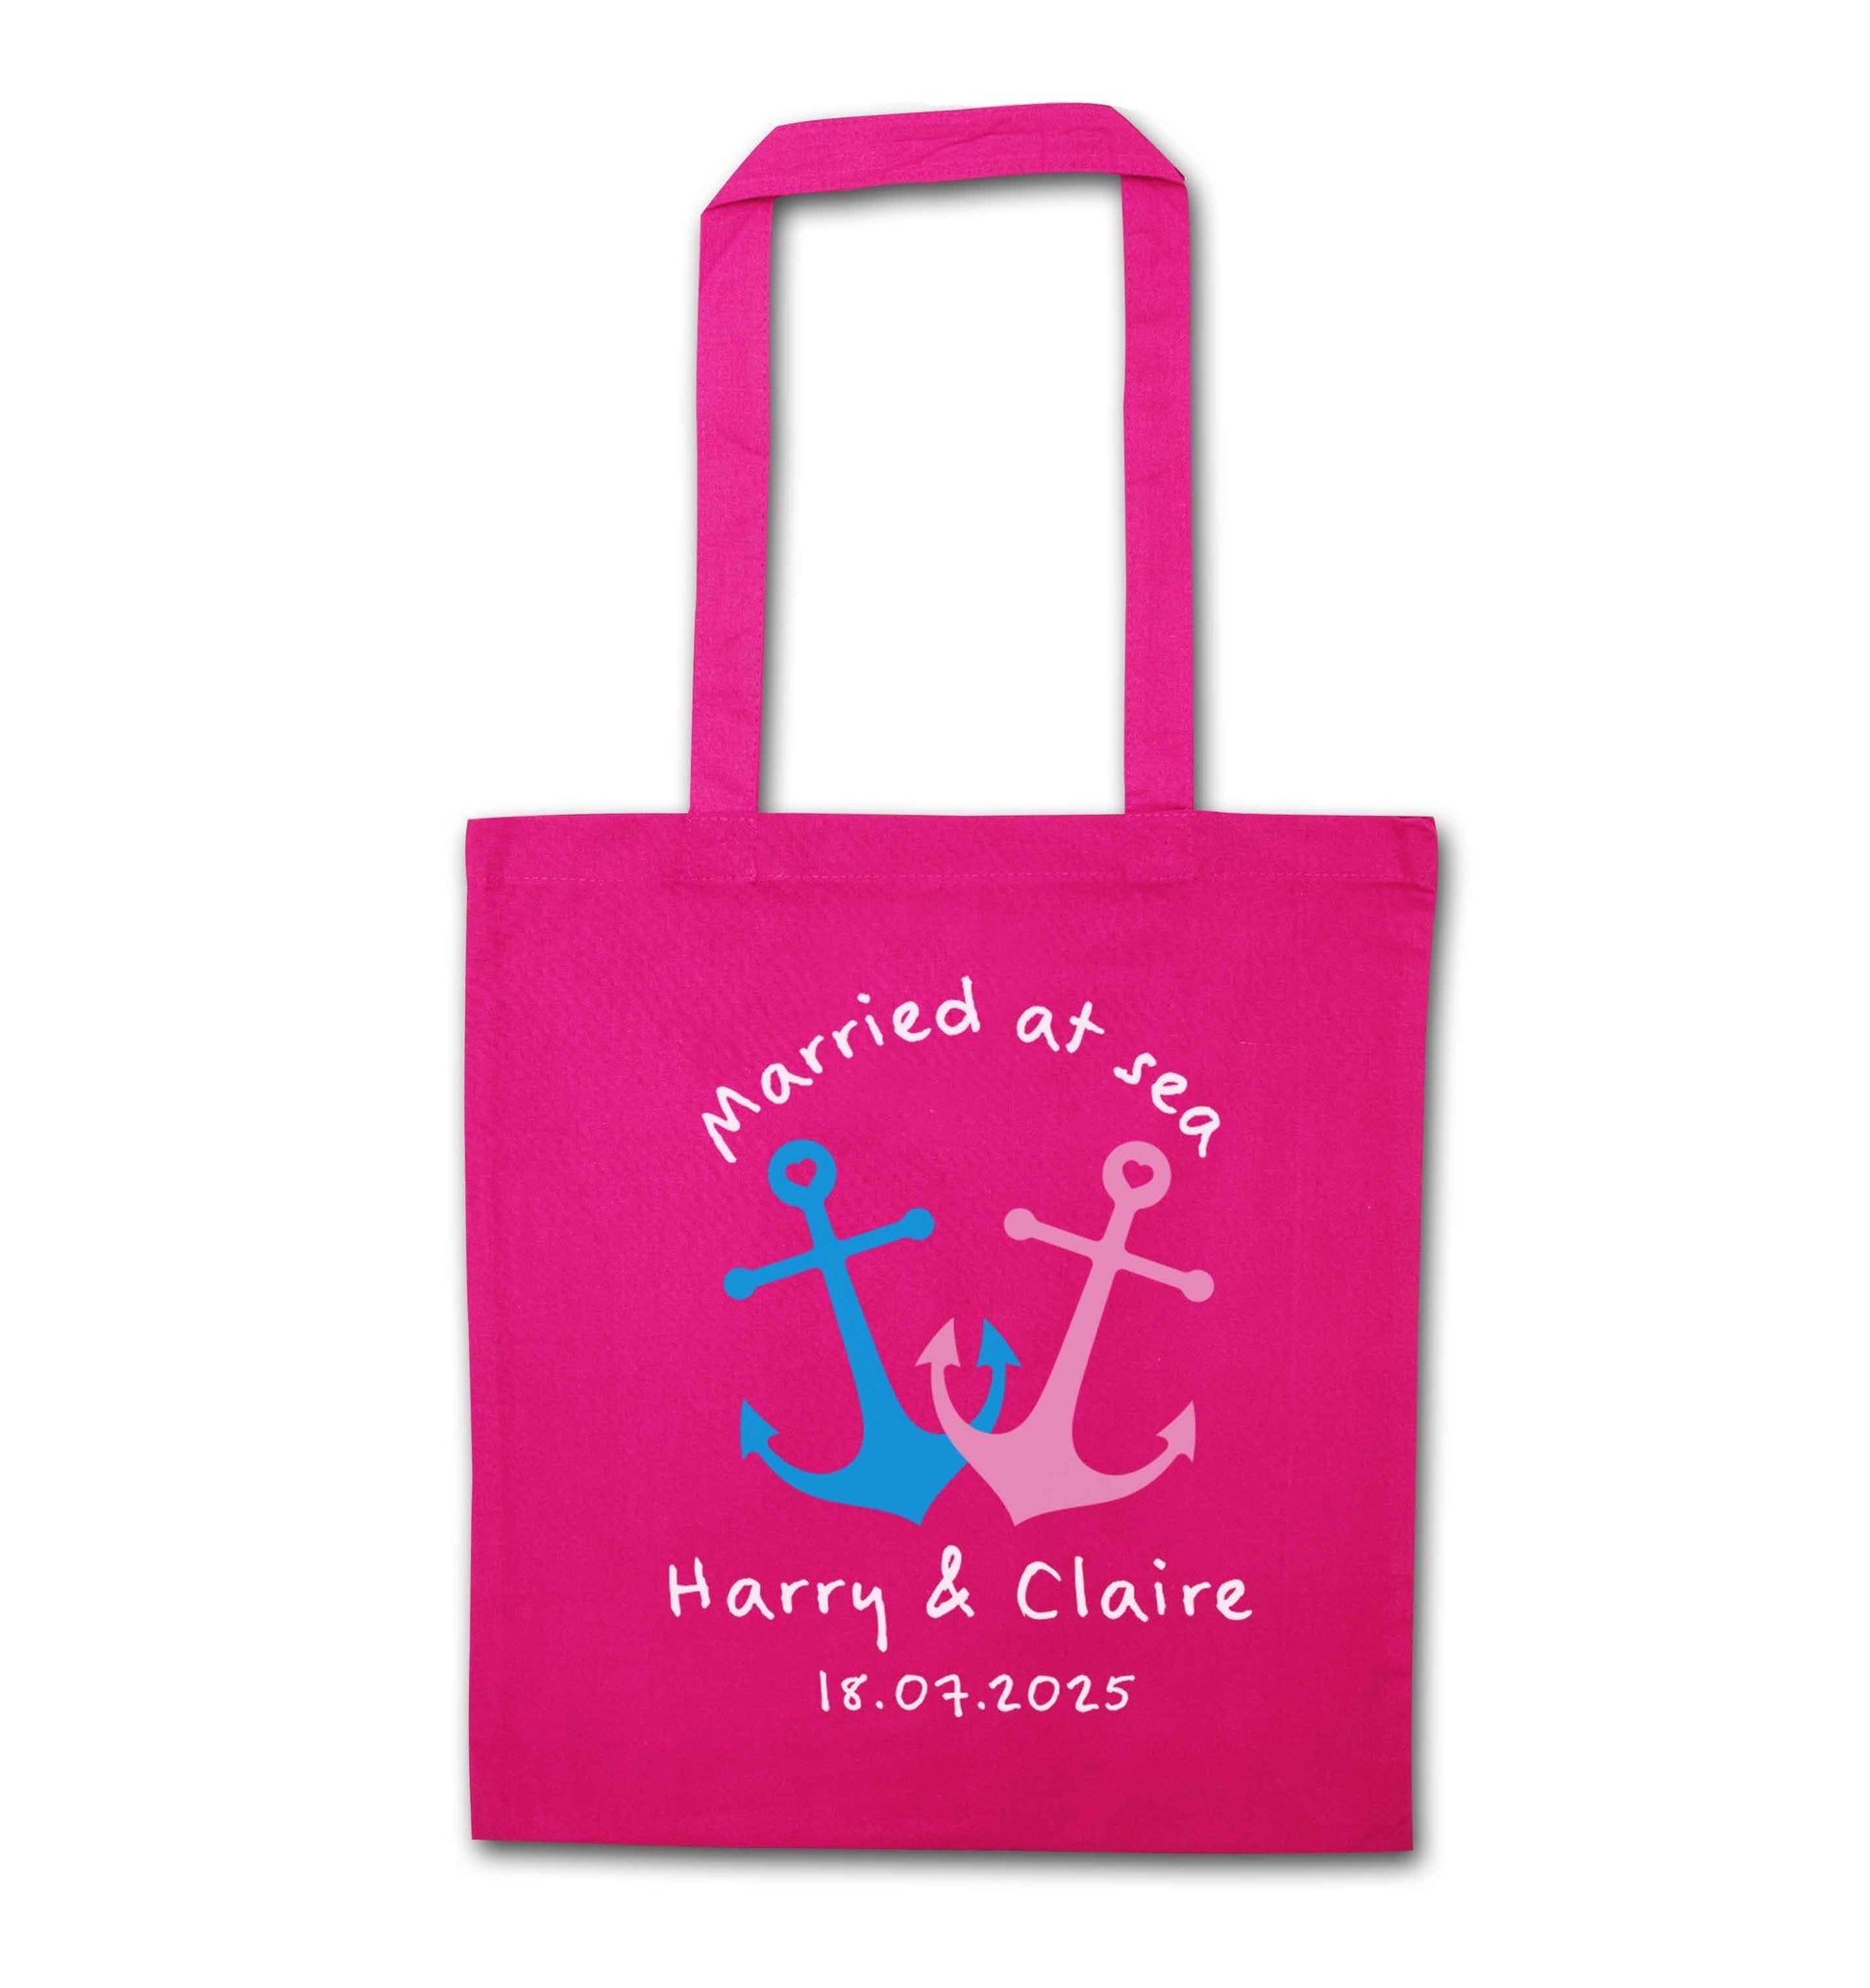 Married at sea pink tote bag